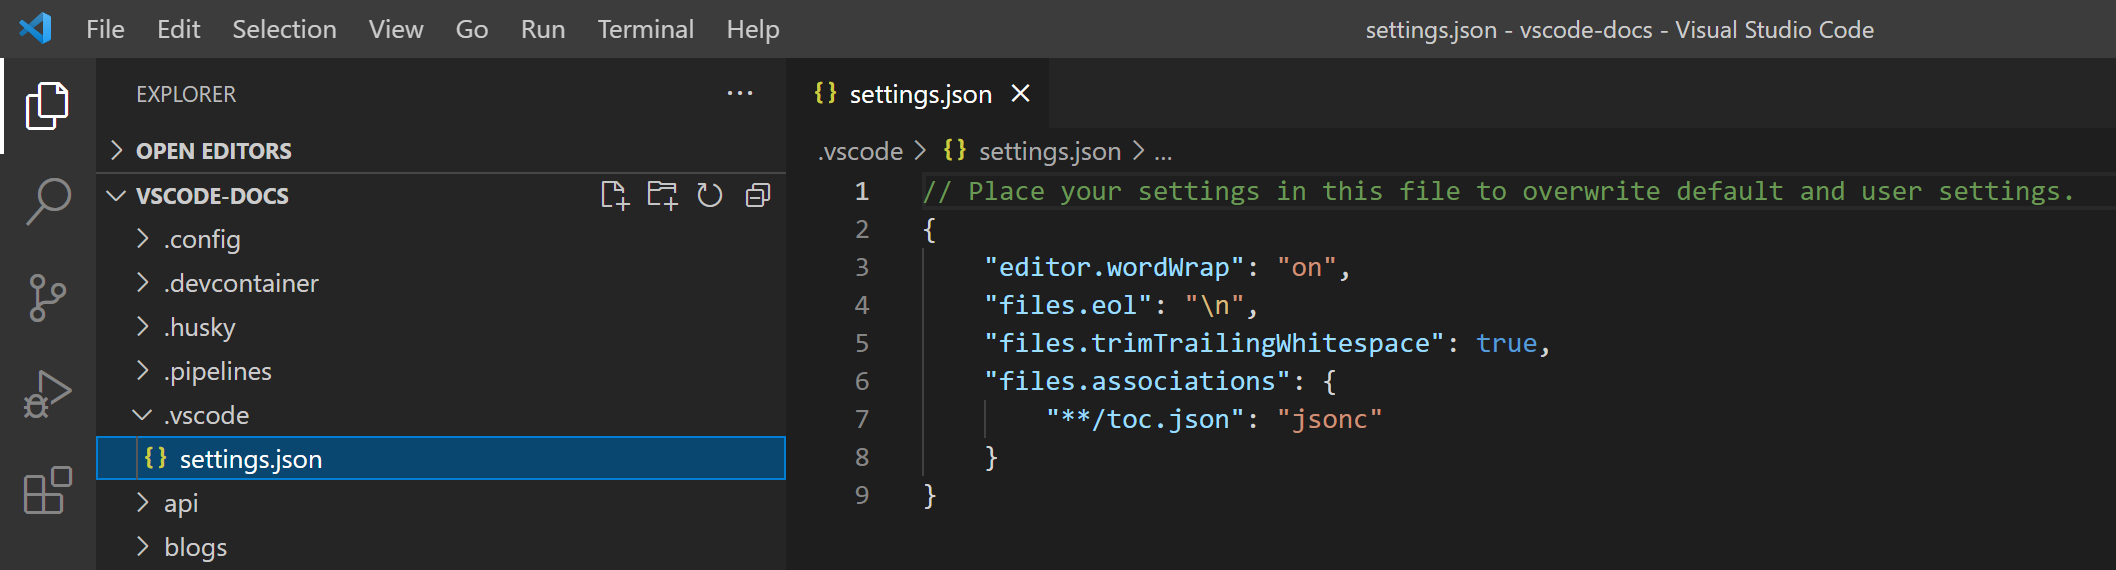 文件资源管理器在 .vscode 文件夹下显示 settings.json